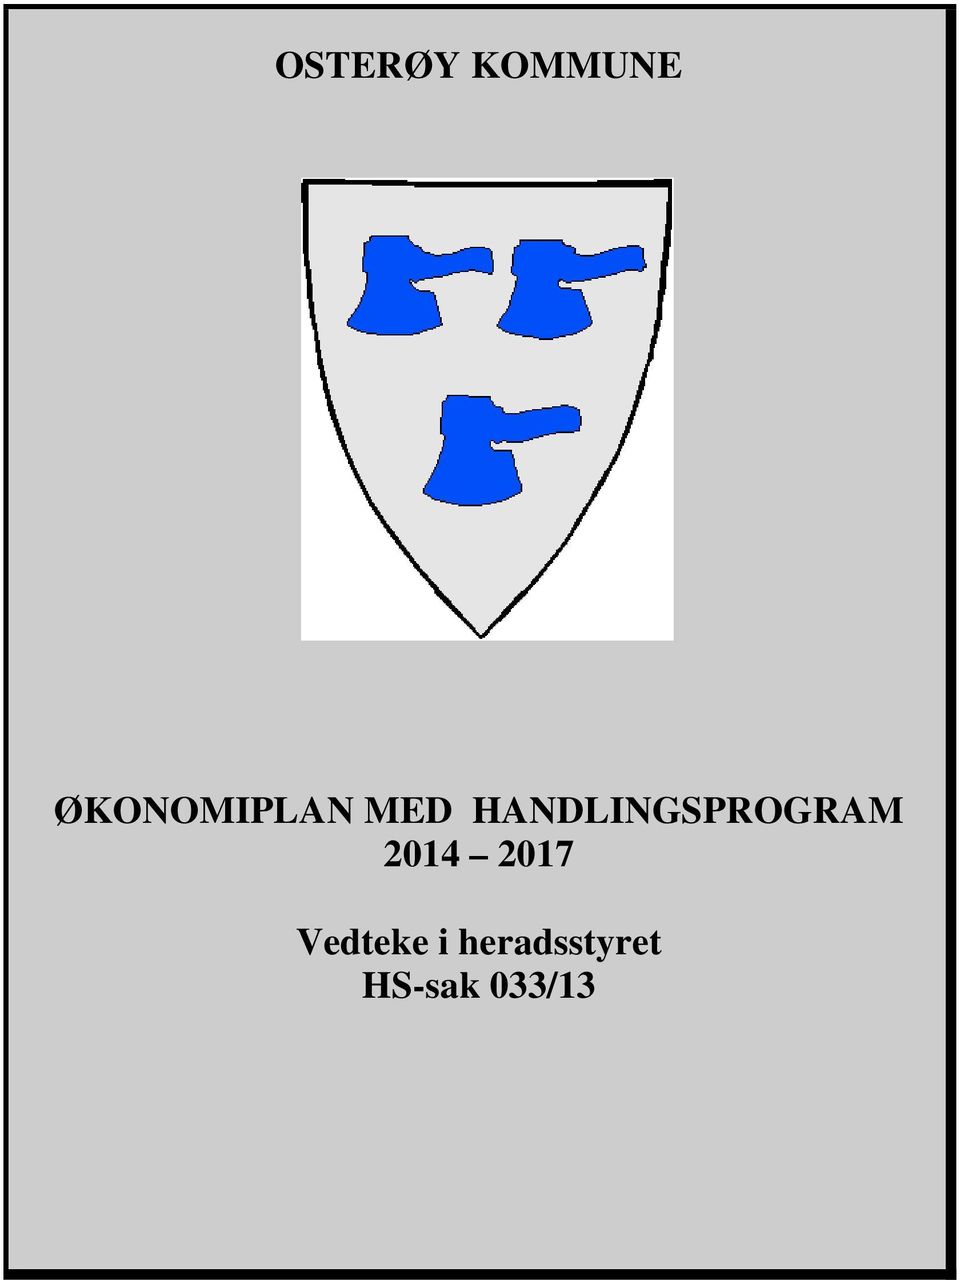 HANDLINGSPROGRAM 2014